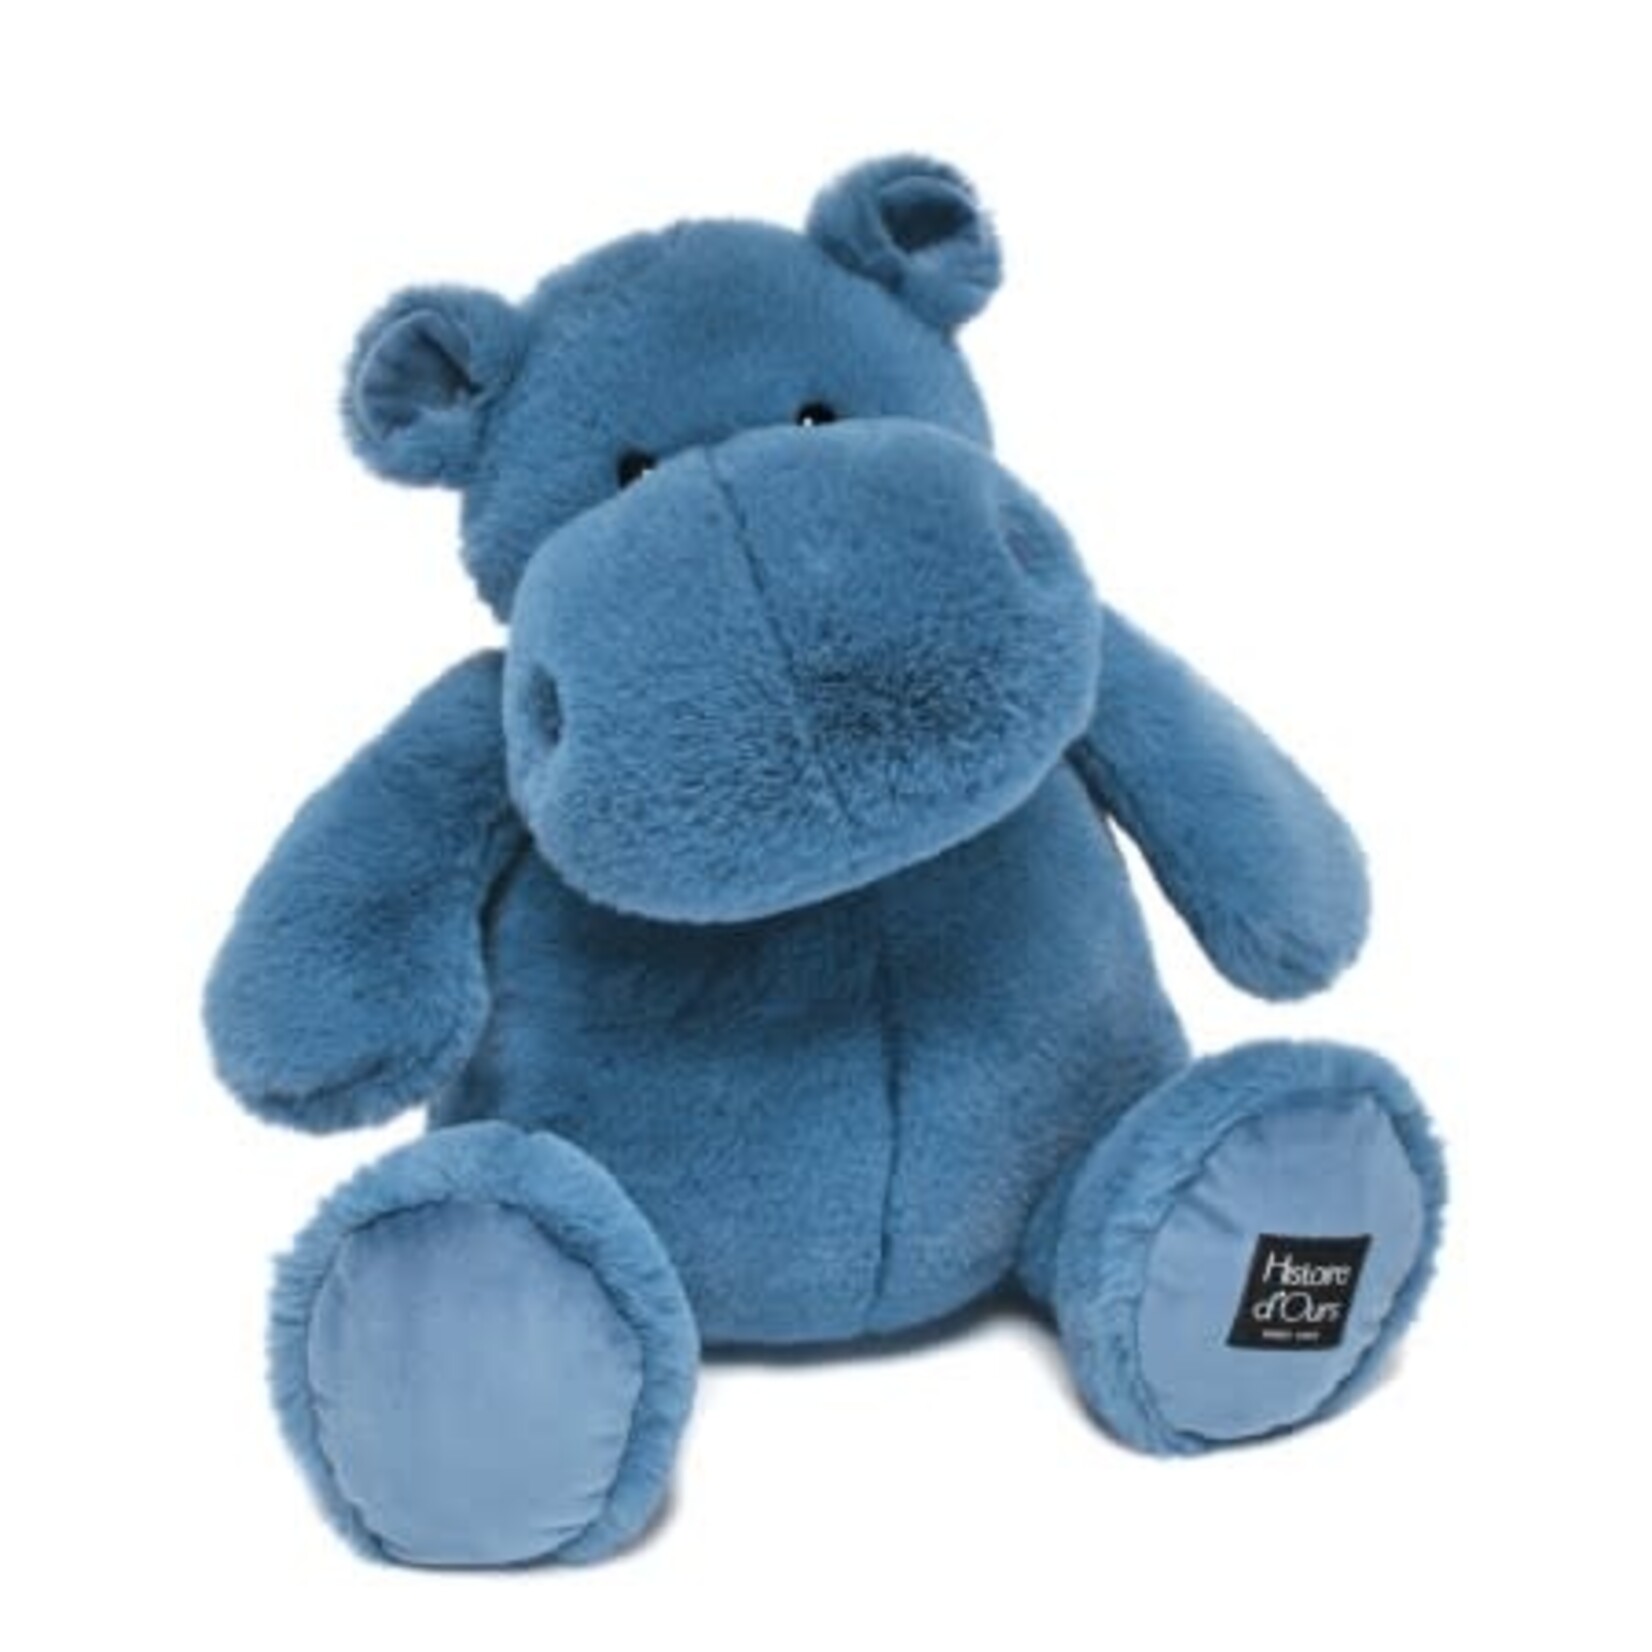 Hippo bleu - 40cm